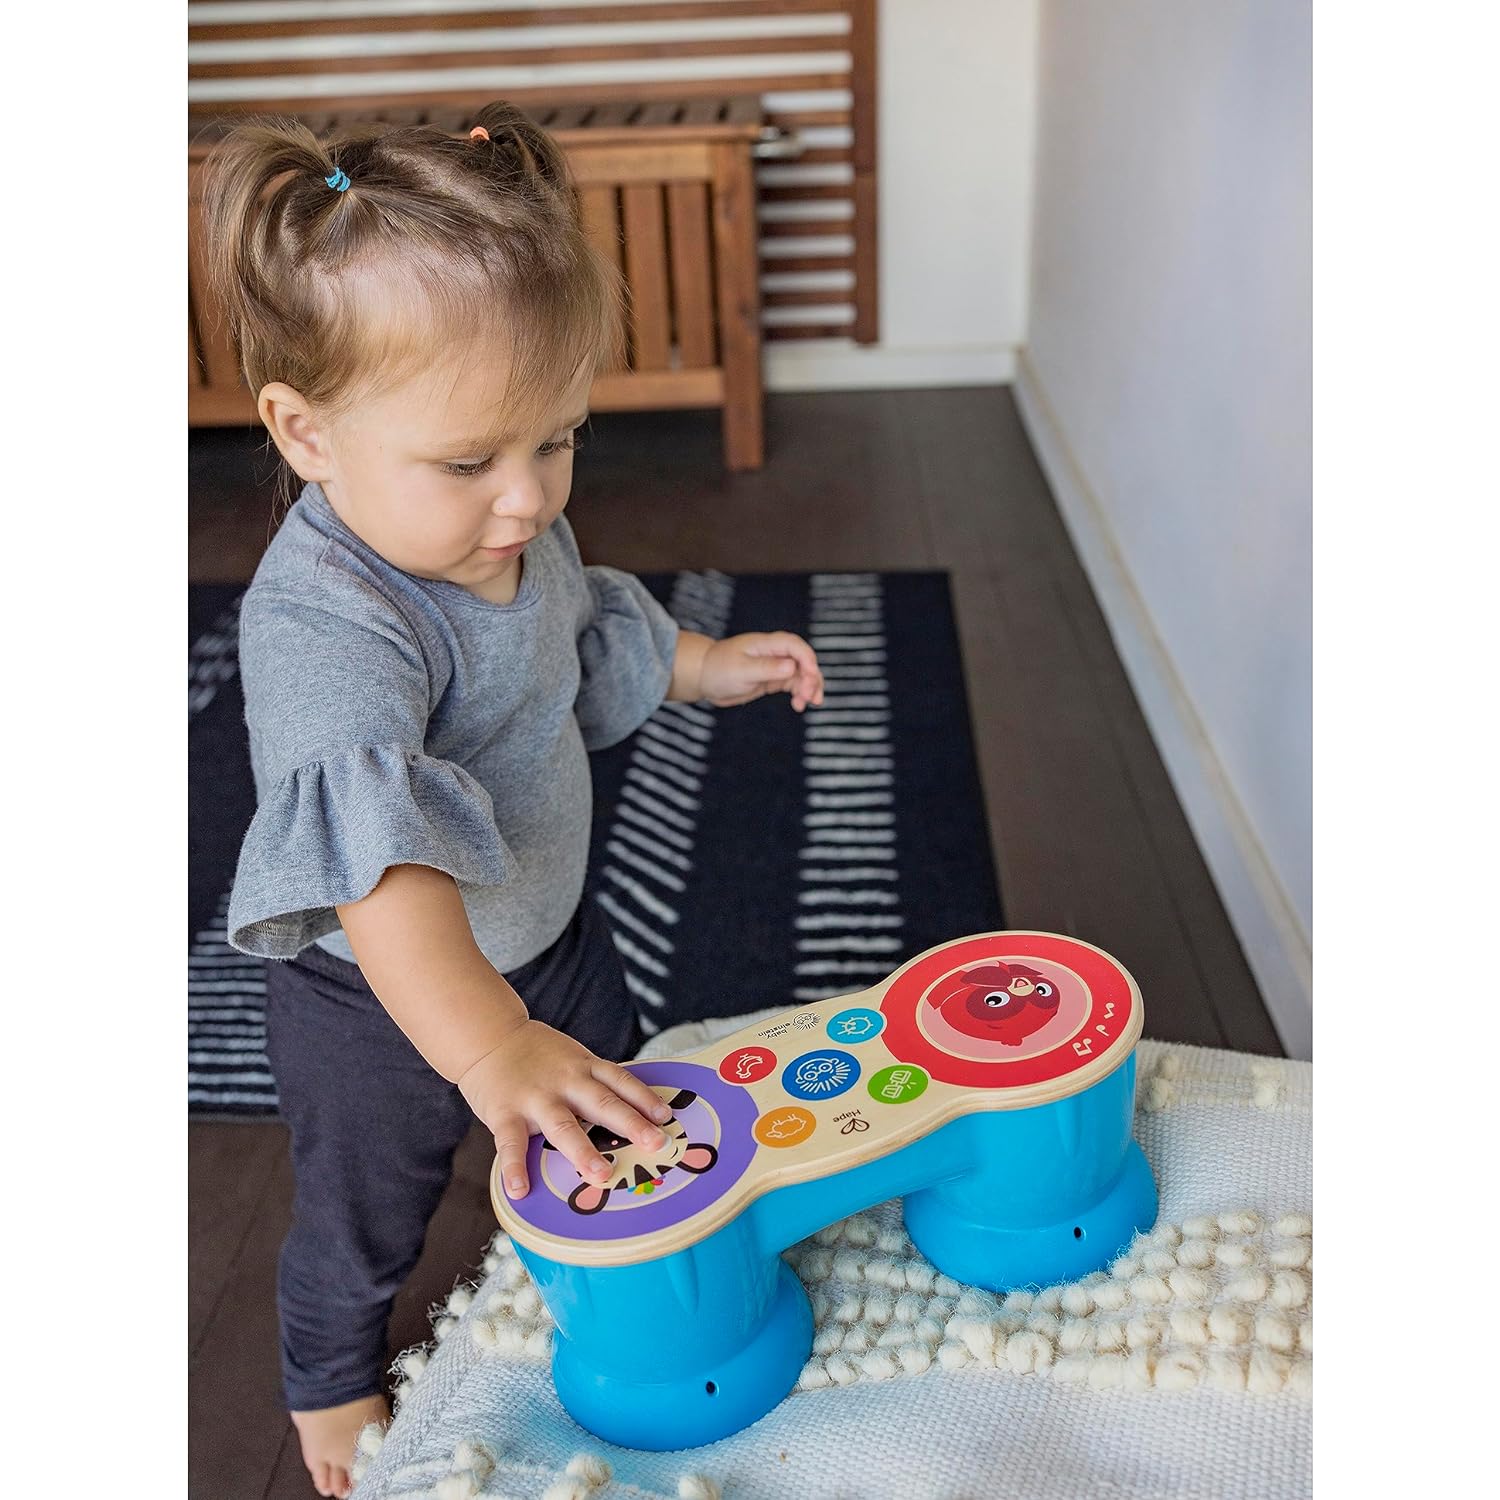 Baby Einstein Upbeat Tunes Magic Touch Wooden Drum Musical Toy